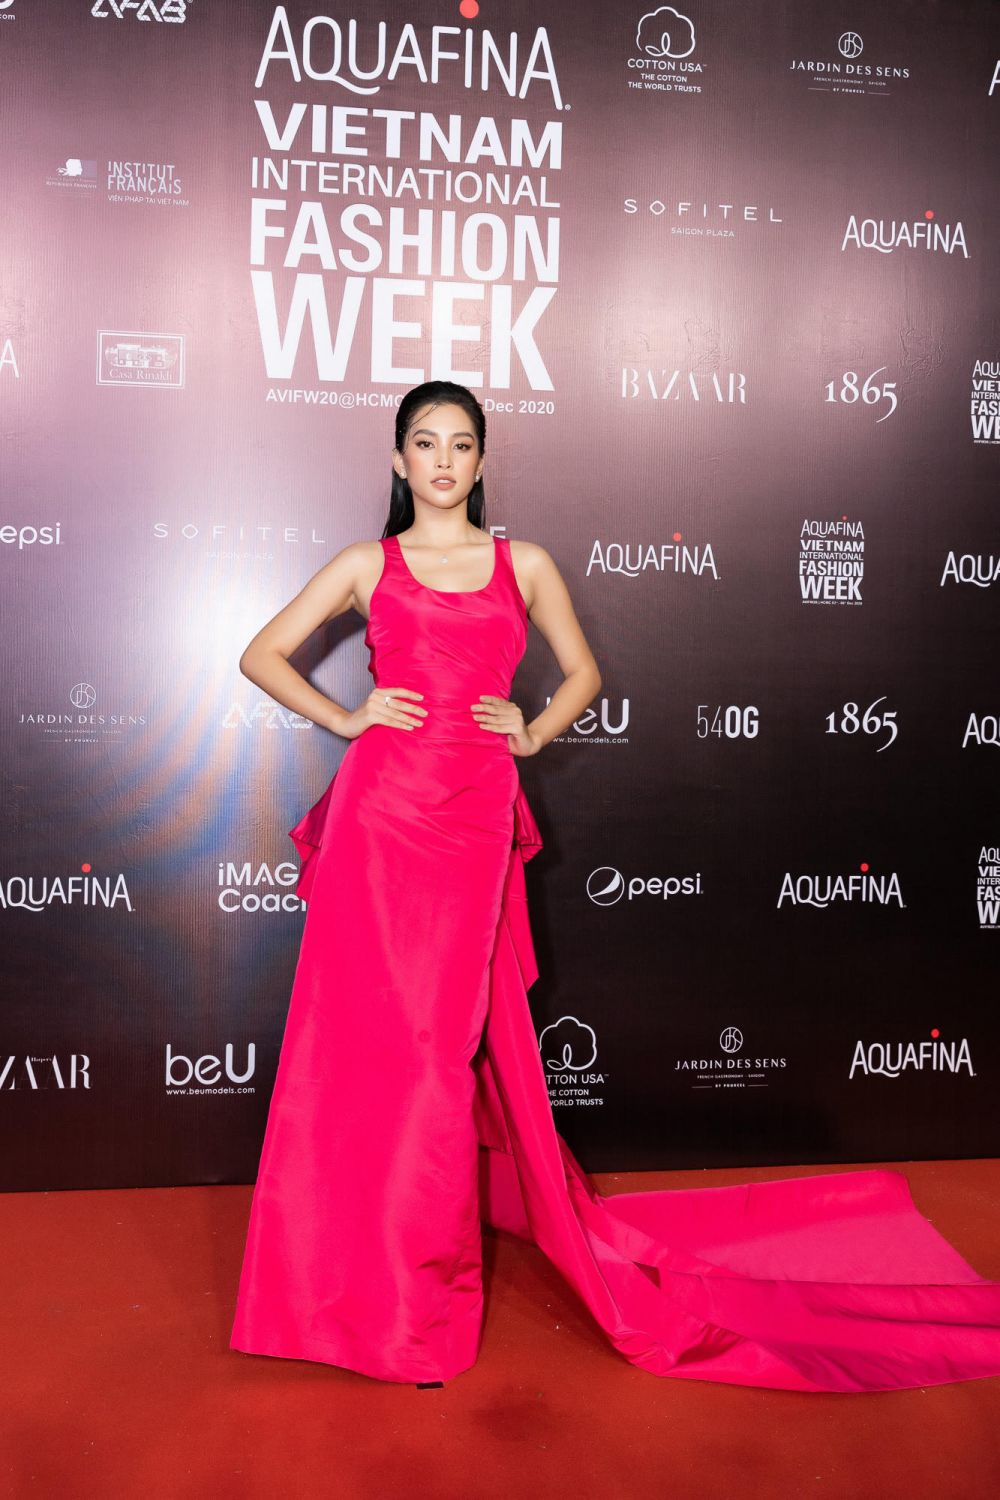 Aquafina Tuần lễ Thời trang Quốc tế Việt Nam: Hoa hậu Hoàn vũ và Hoa hậu Việt Nam ‘đọ sắc’ trên thảm đỏ